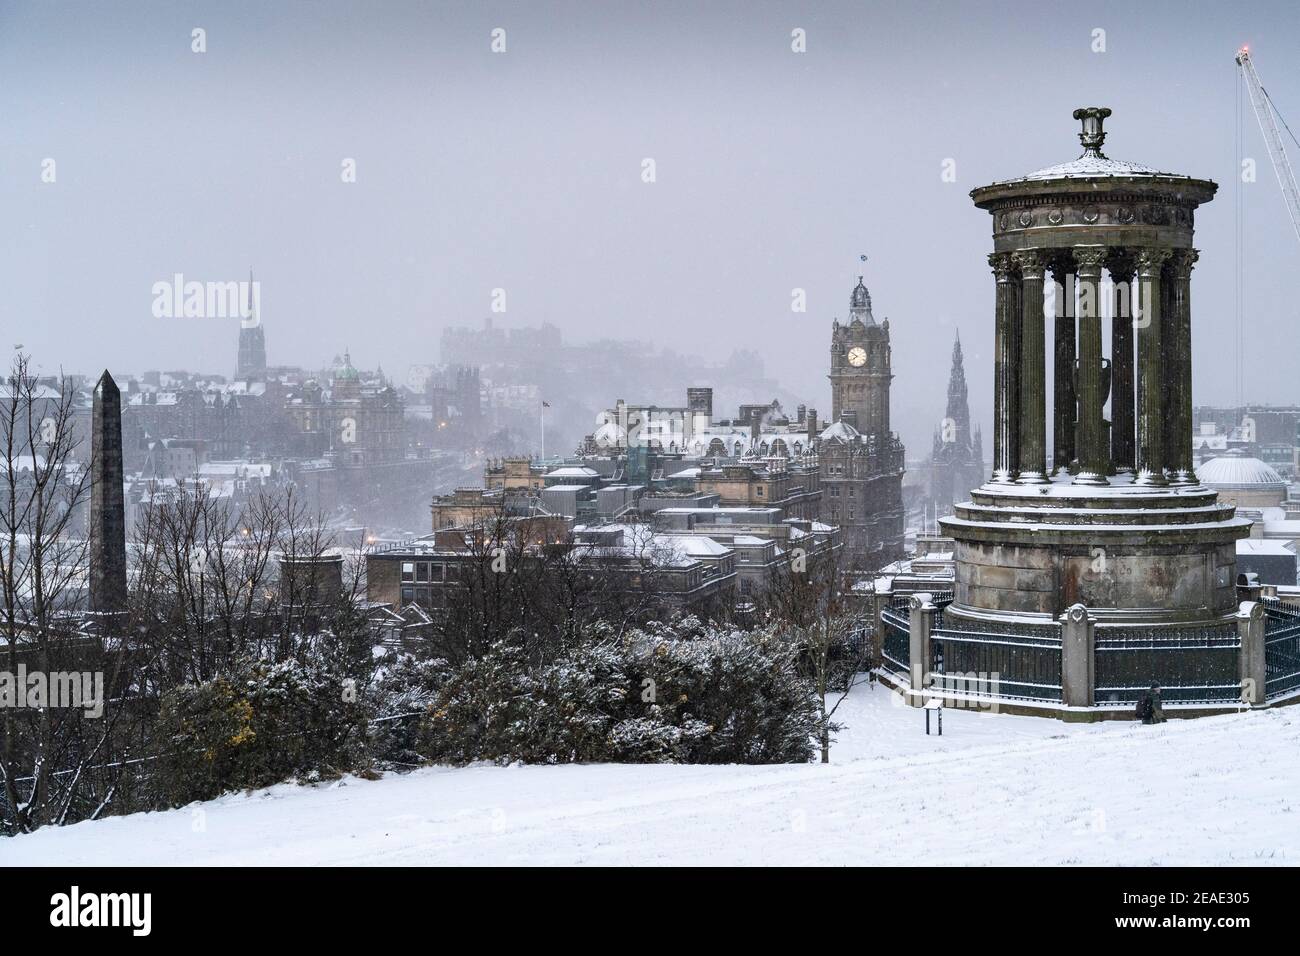 Edimburgo, Scozia, Regno Unito. 9 Feb 2021. Big Freeze continua nel Regno Unito con Storm Darcy portando diversi centimetri di neve a Edimburgo durante la notte. PIC; Blizzard soffia attraverso Edimburgo vista da Calton Hill. Iain Masterton/Alamy Notizie dal vivo Foto Stock